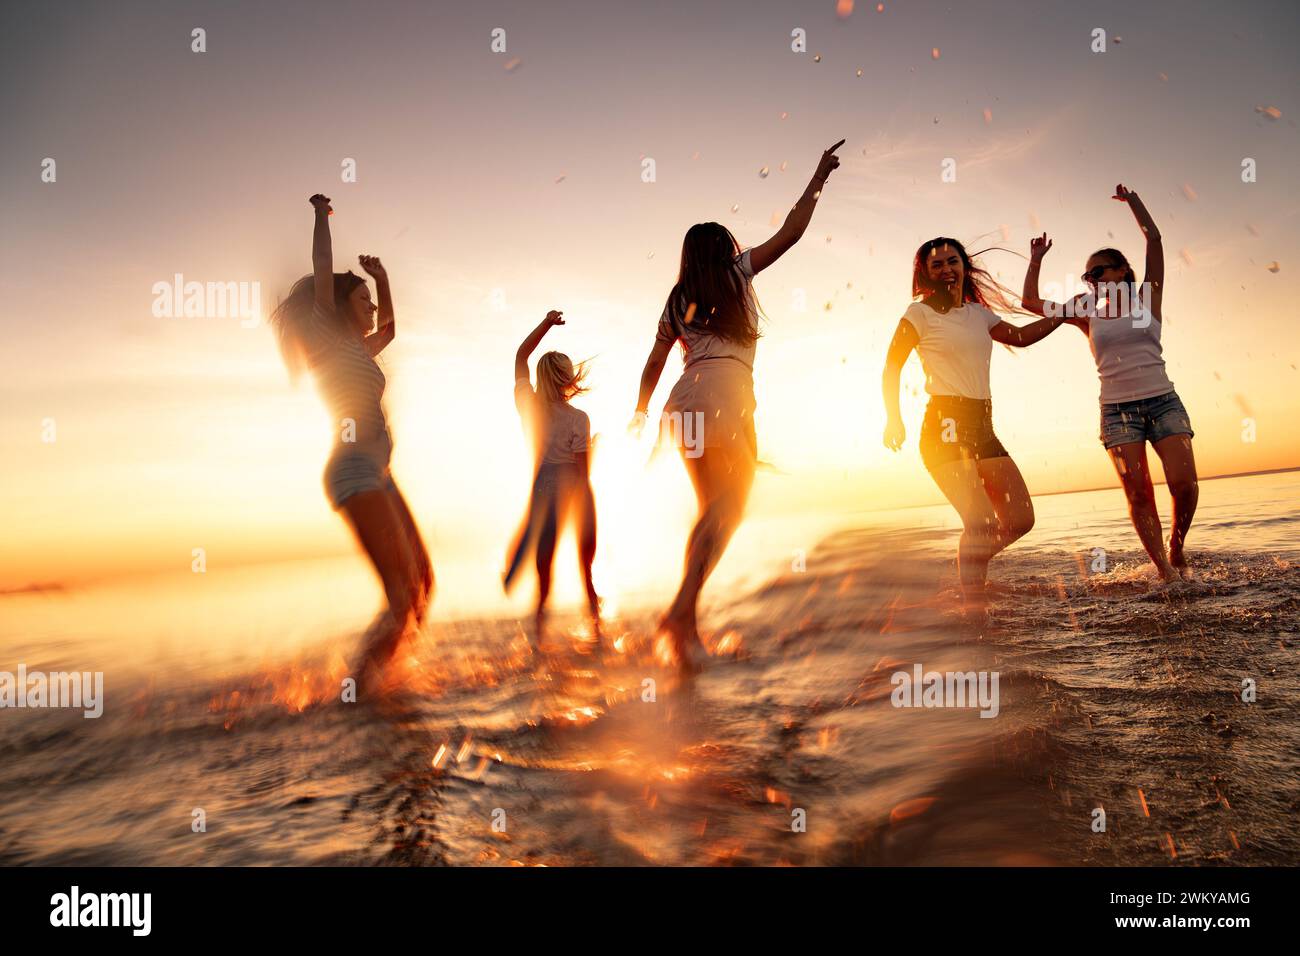 Groupe de jeunes filles heureuses s'amusent et dansent à la plage calme du coucher du soleil. Mouvement flou Banque D'Images